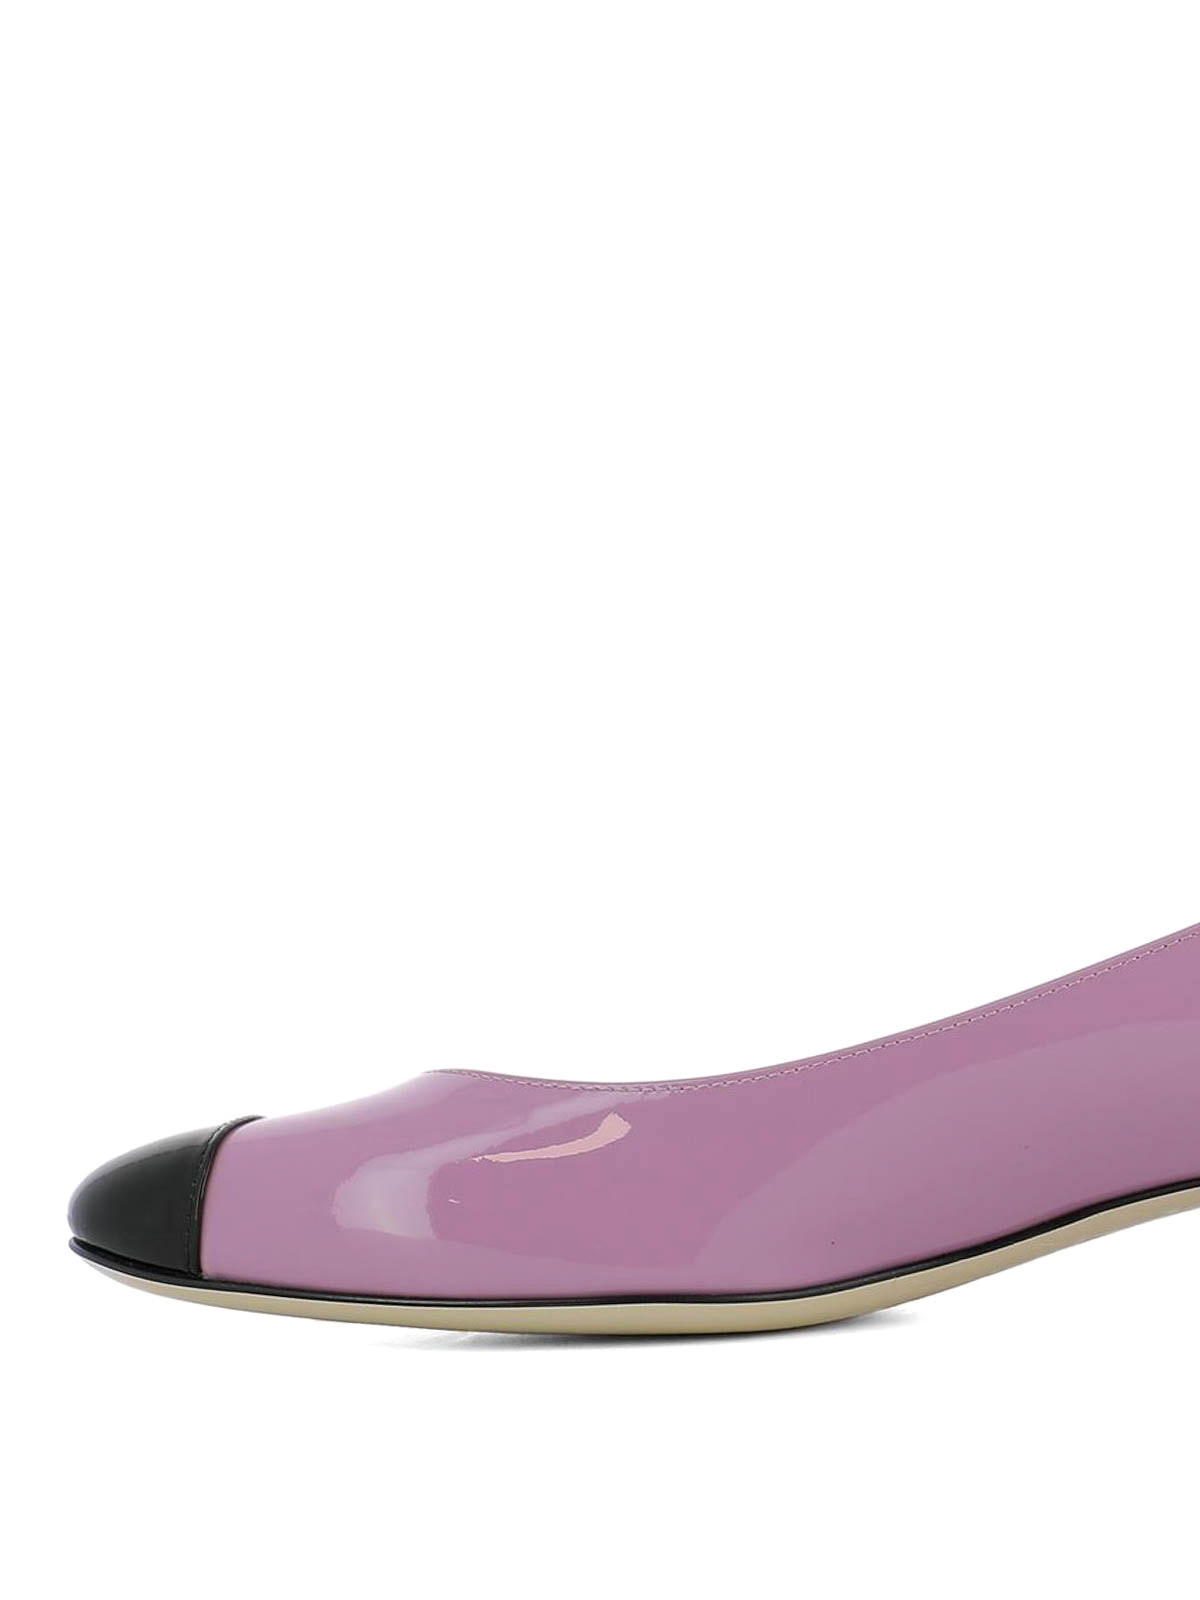 Court shoes Bottega Veneta - Bette lilac patent leather pumps